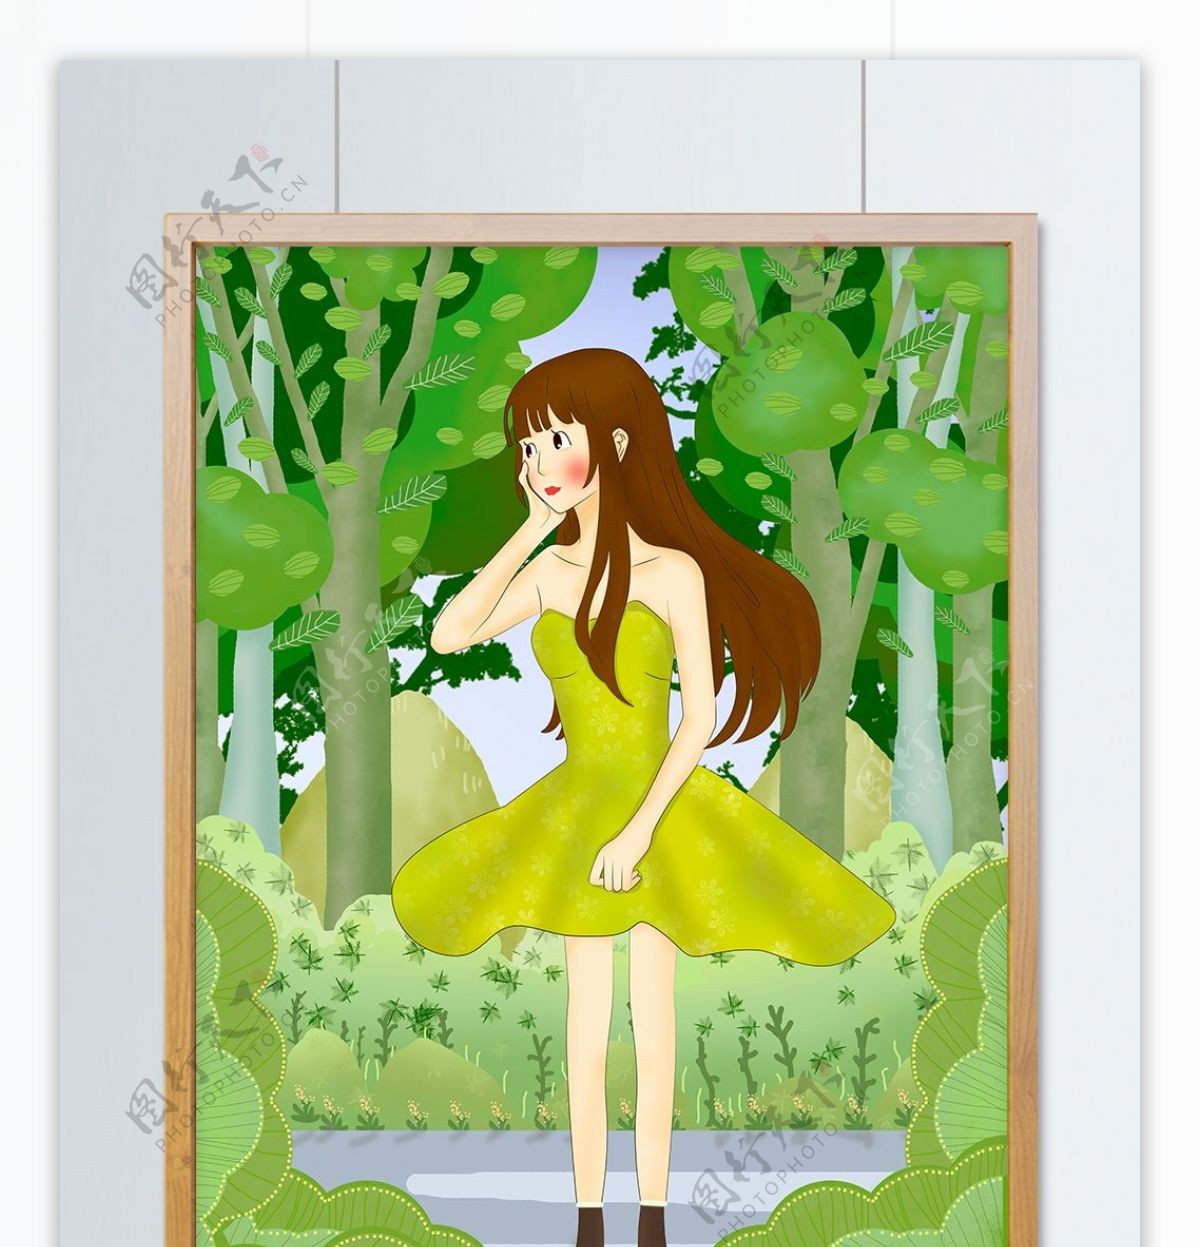 四月你好之女孩在森林吹风扁平风插画